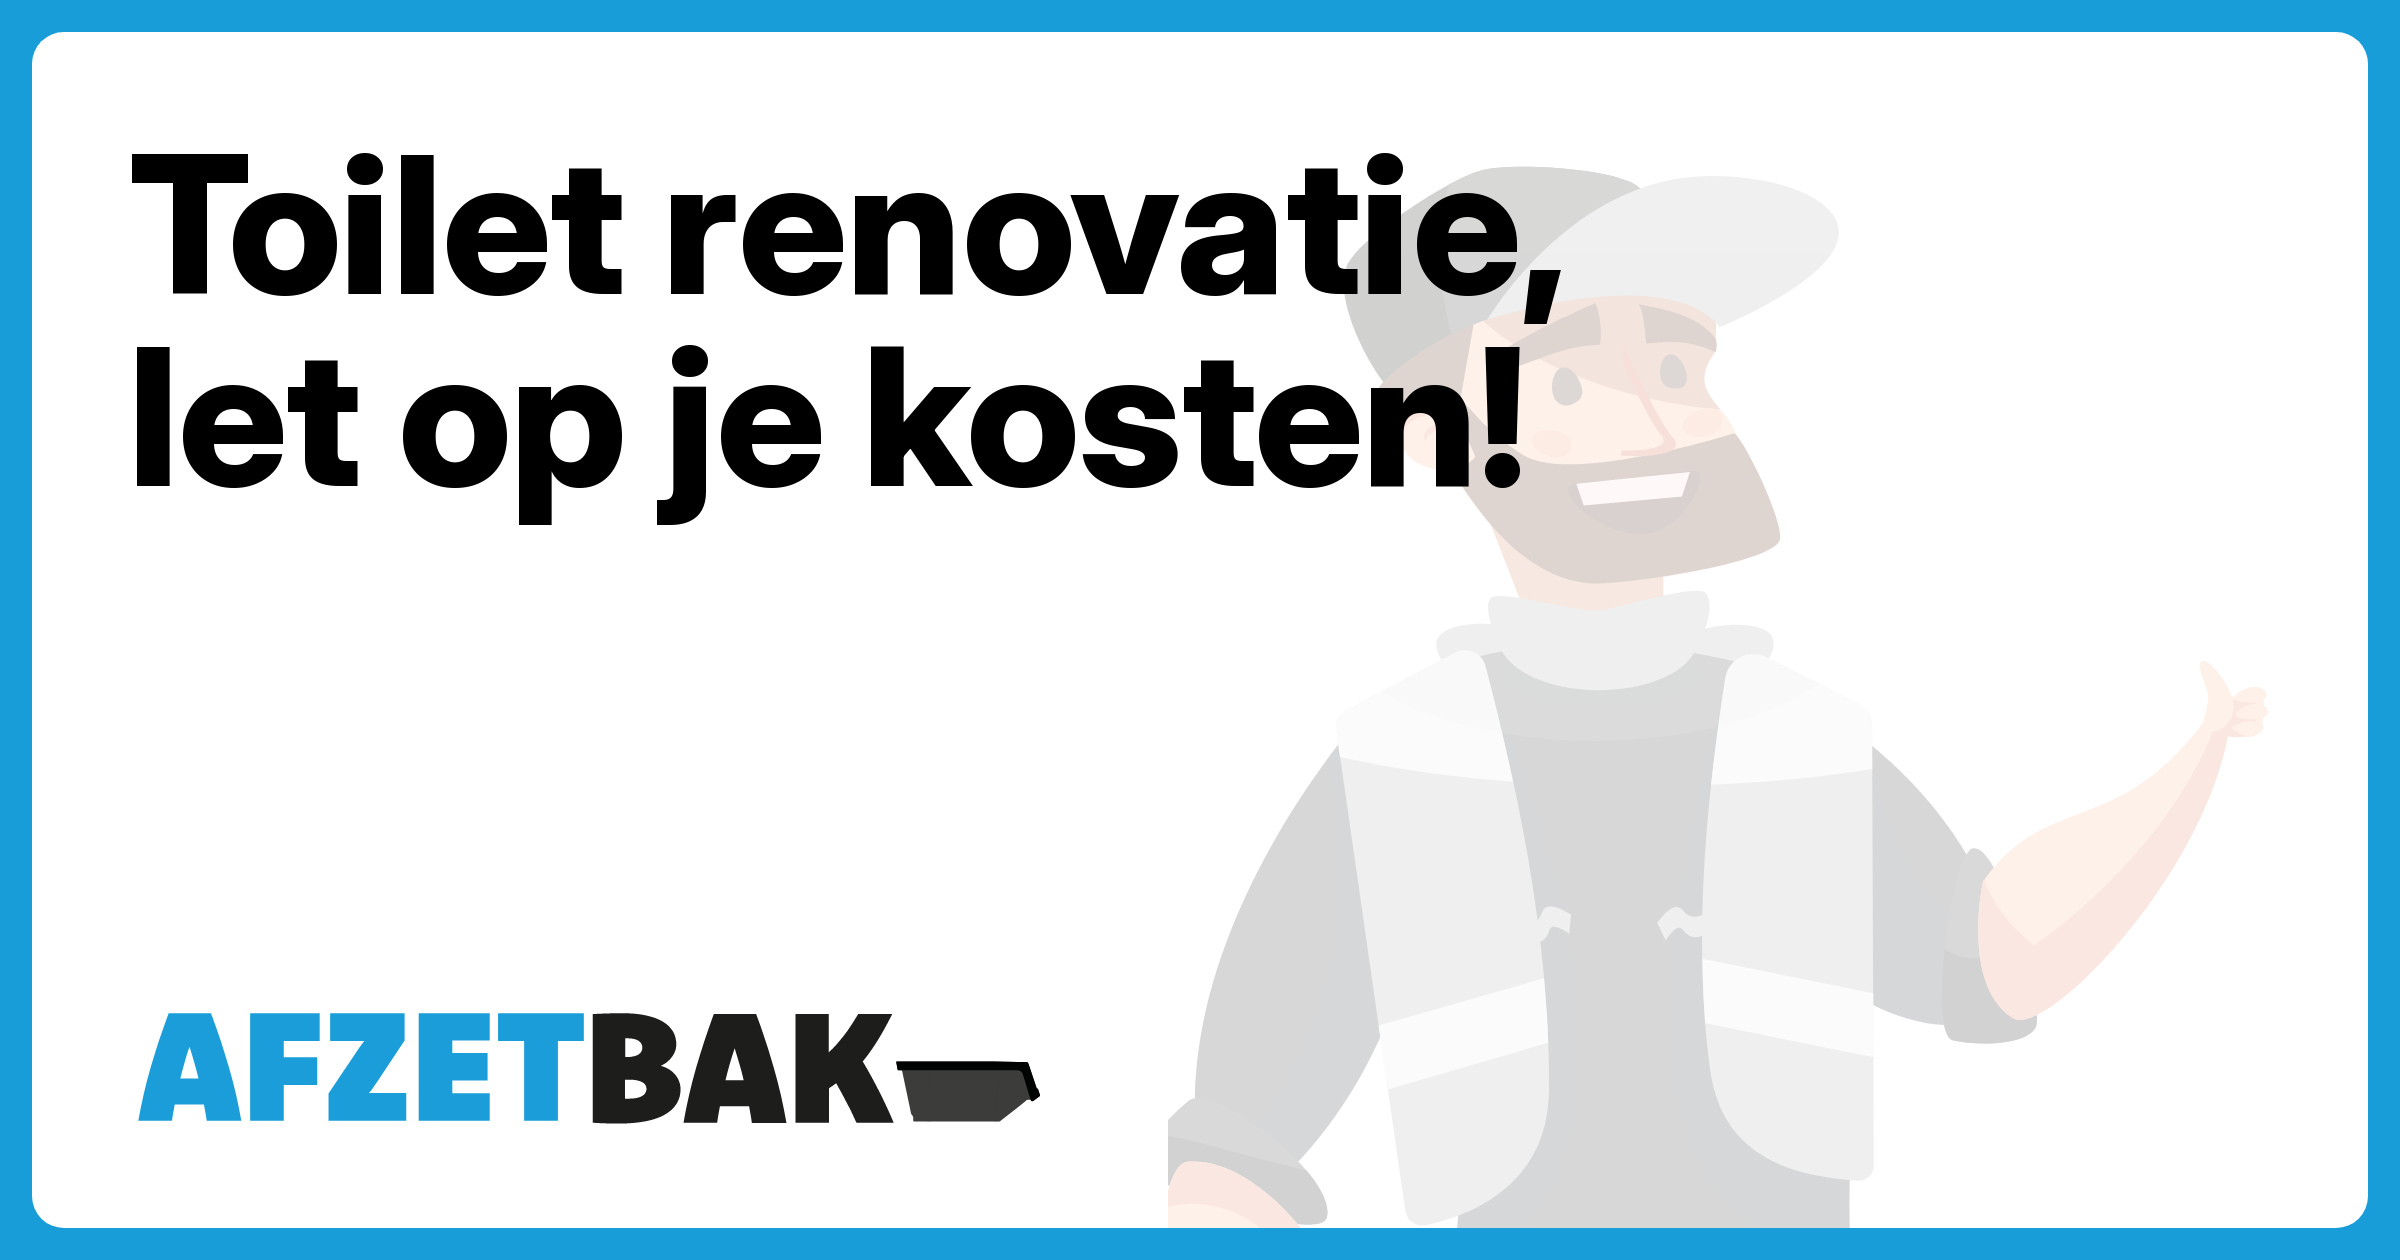 Toilet renovatie, let op je kosten! - Afzetbak.nl